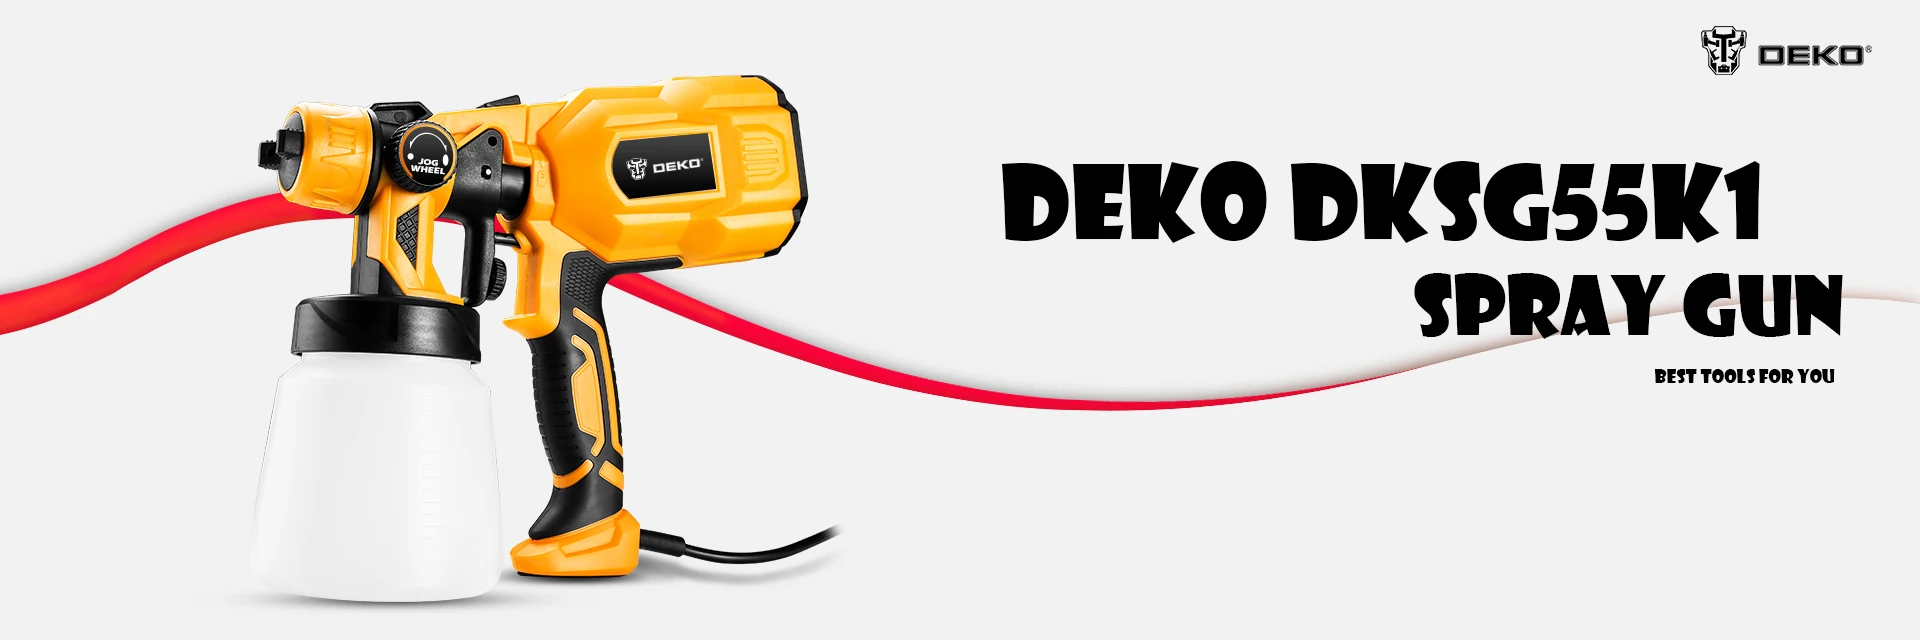 DEKO DKSG55K1 220 В ручной распылитель краски распылители 550 Вт Высокая мощность домашняя электрическая Аэрограф Легкое распыление 3 сопла